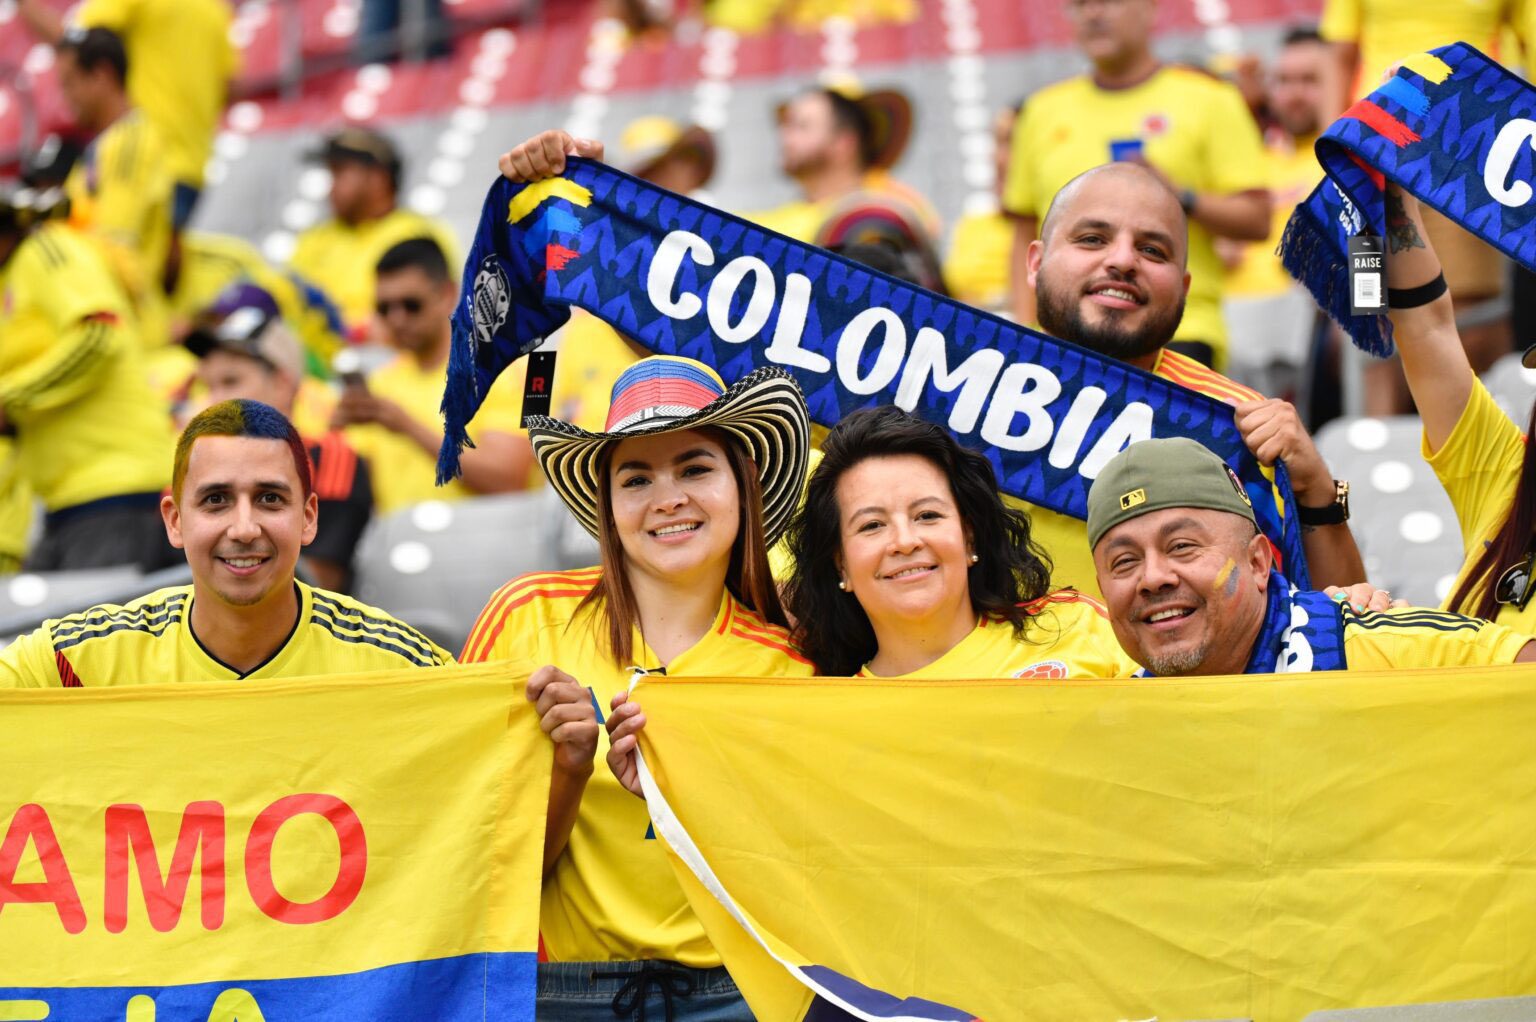 Colombia vs. Brasil se podrá ver en 4 pantallas gigantes: estas son las ubicaciones